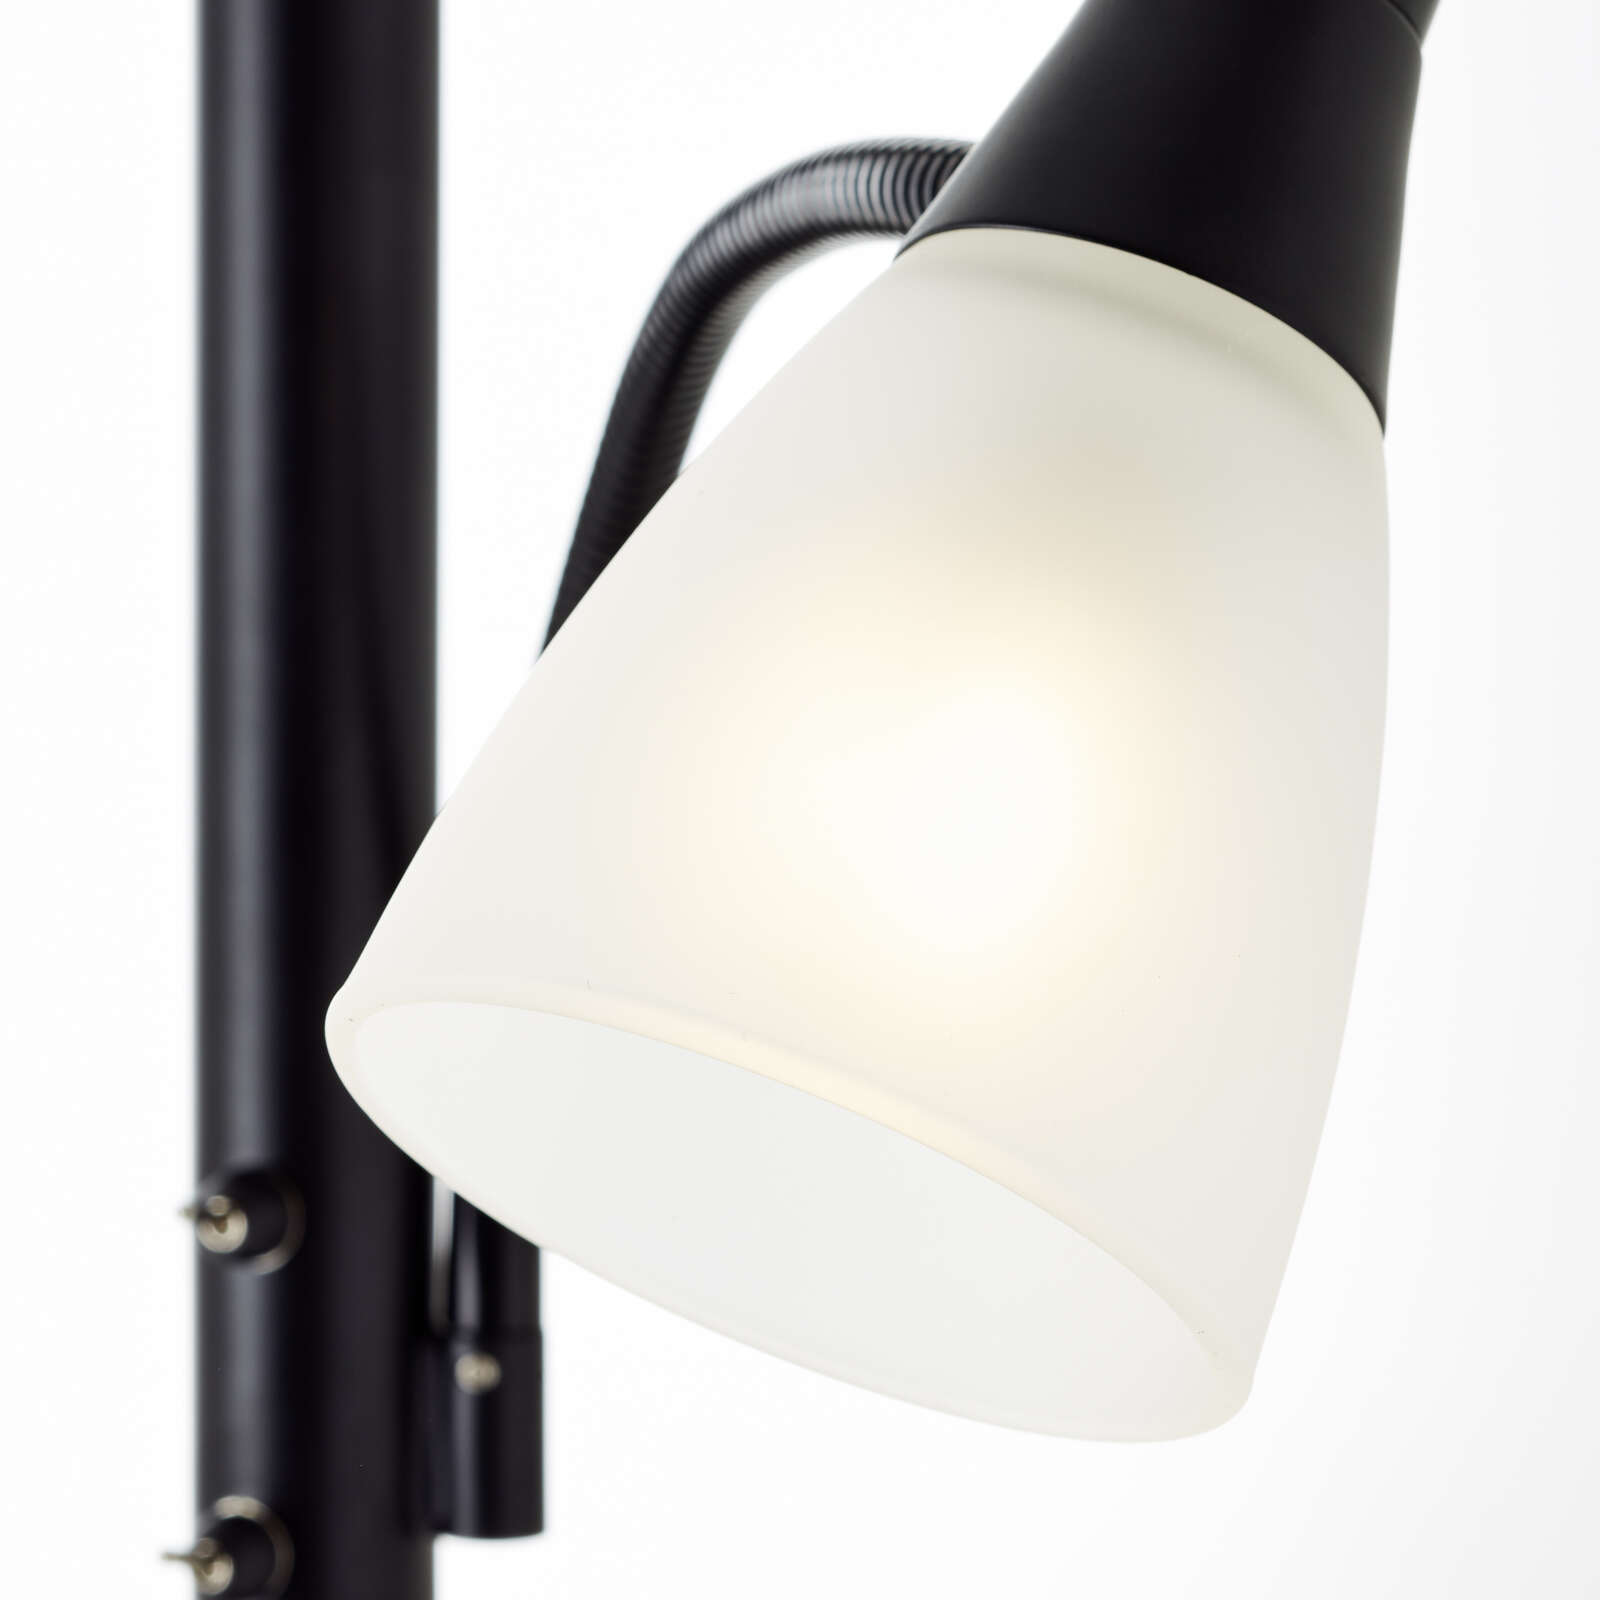             Glazen plafondlamp - Lennard 1 - Zwart
        